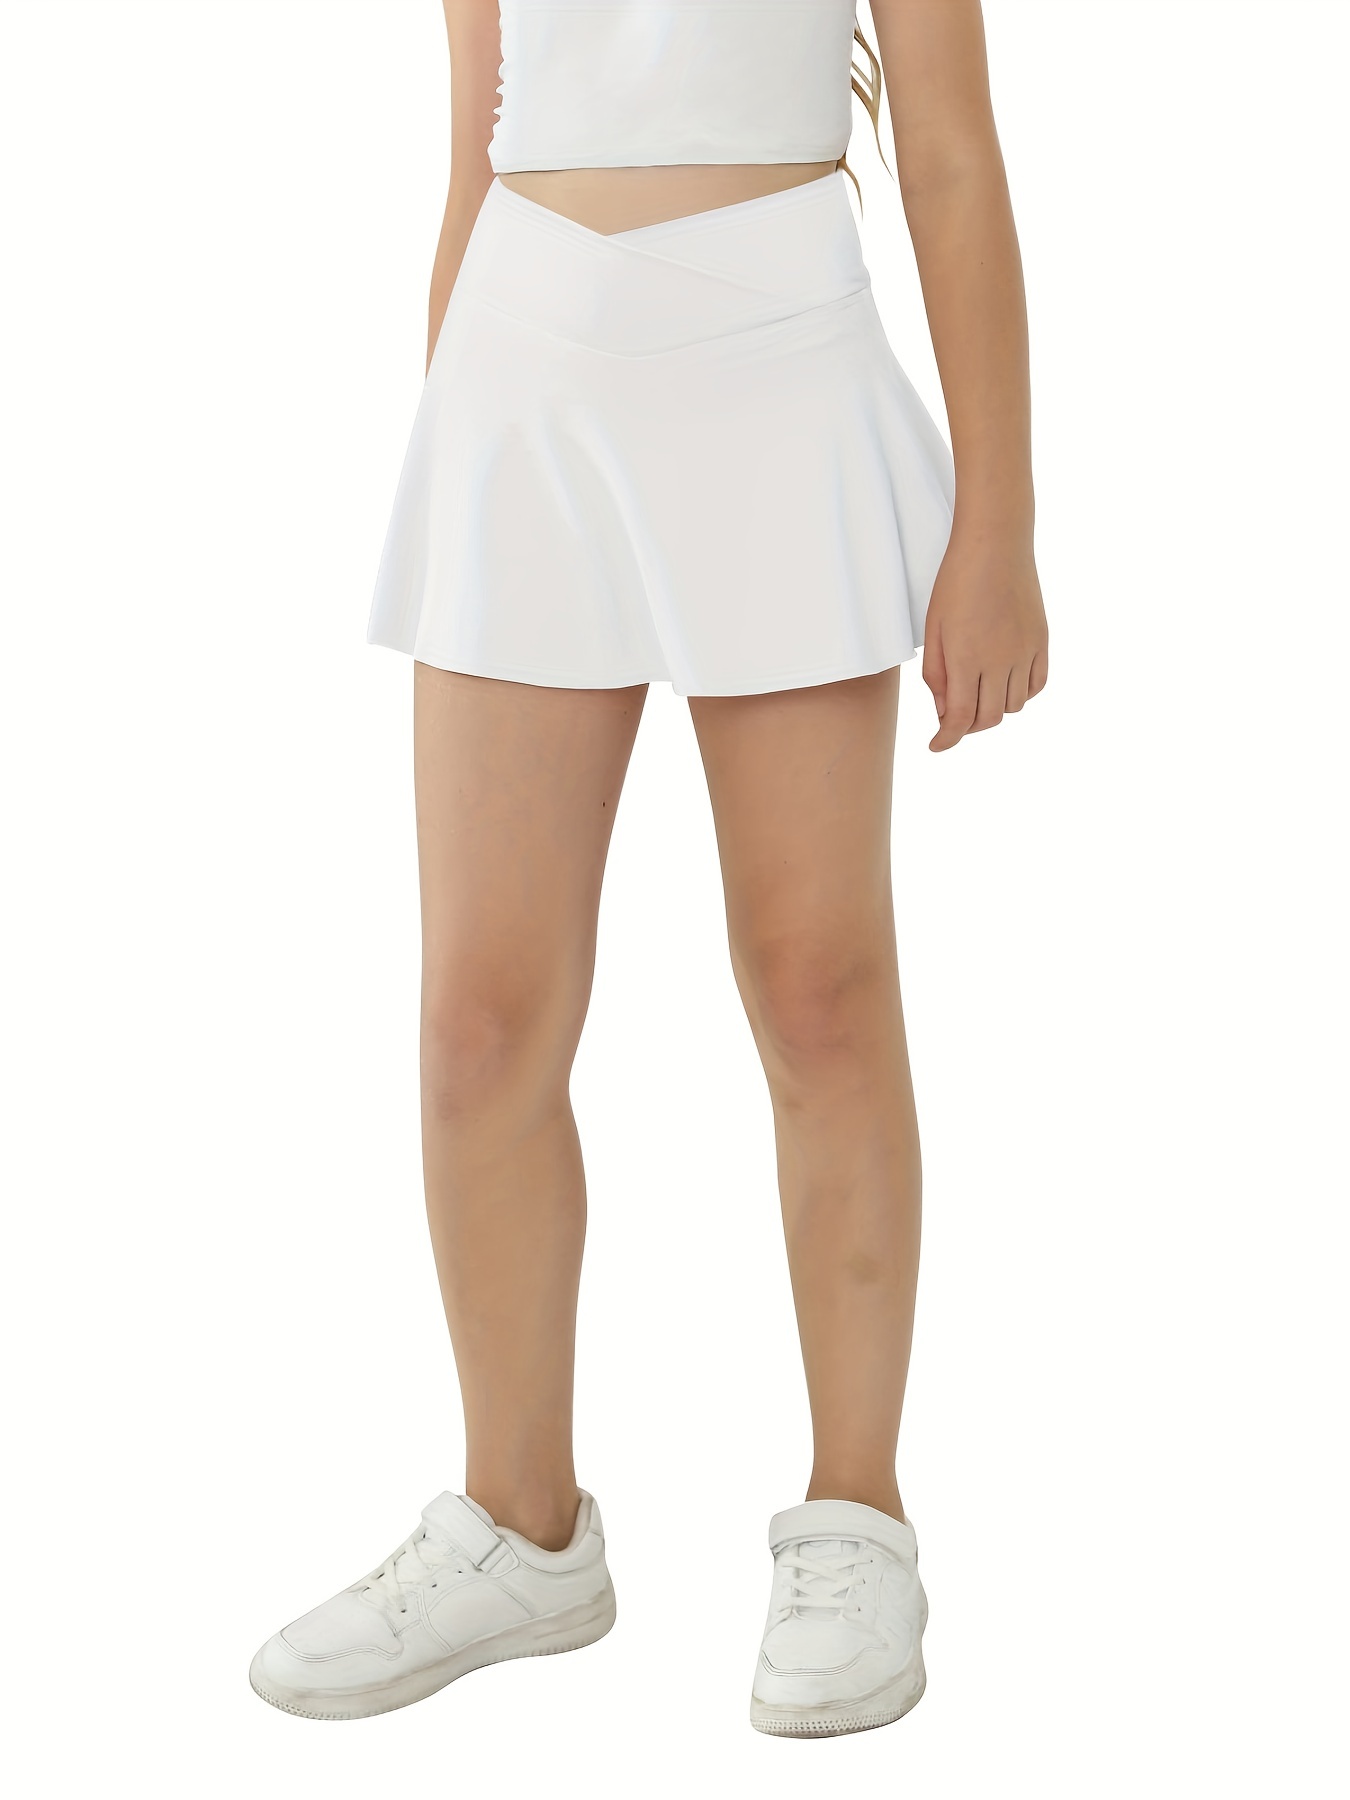 Tennis Skirt Womens Athletic Skort Pleated Skirt Workout Running Skirt Golf  Skirts for Women with Pockets Mini Skirt 